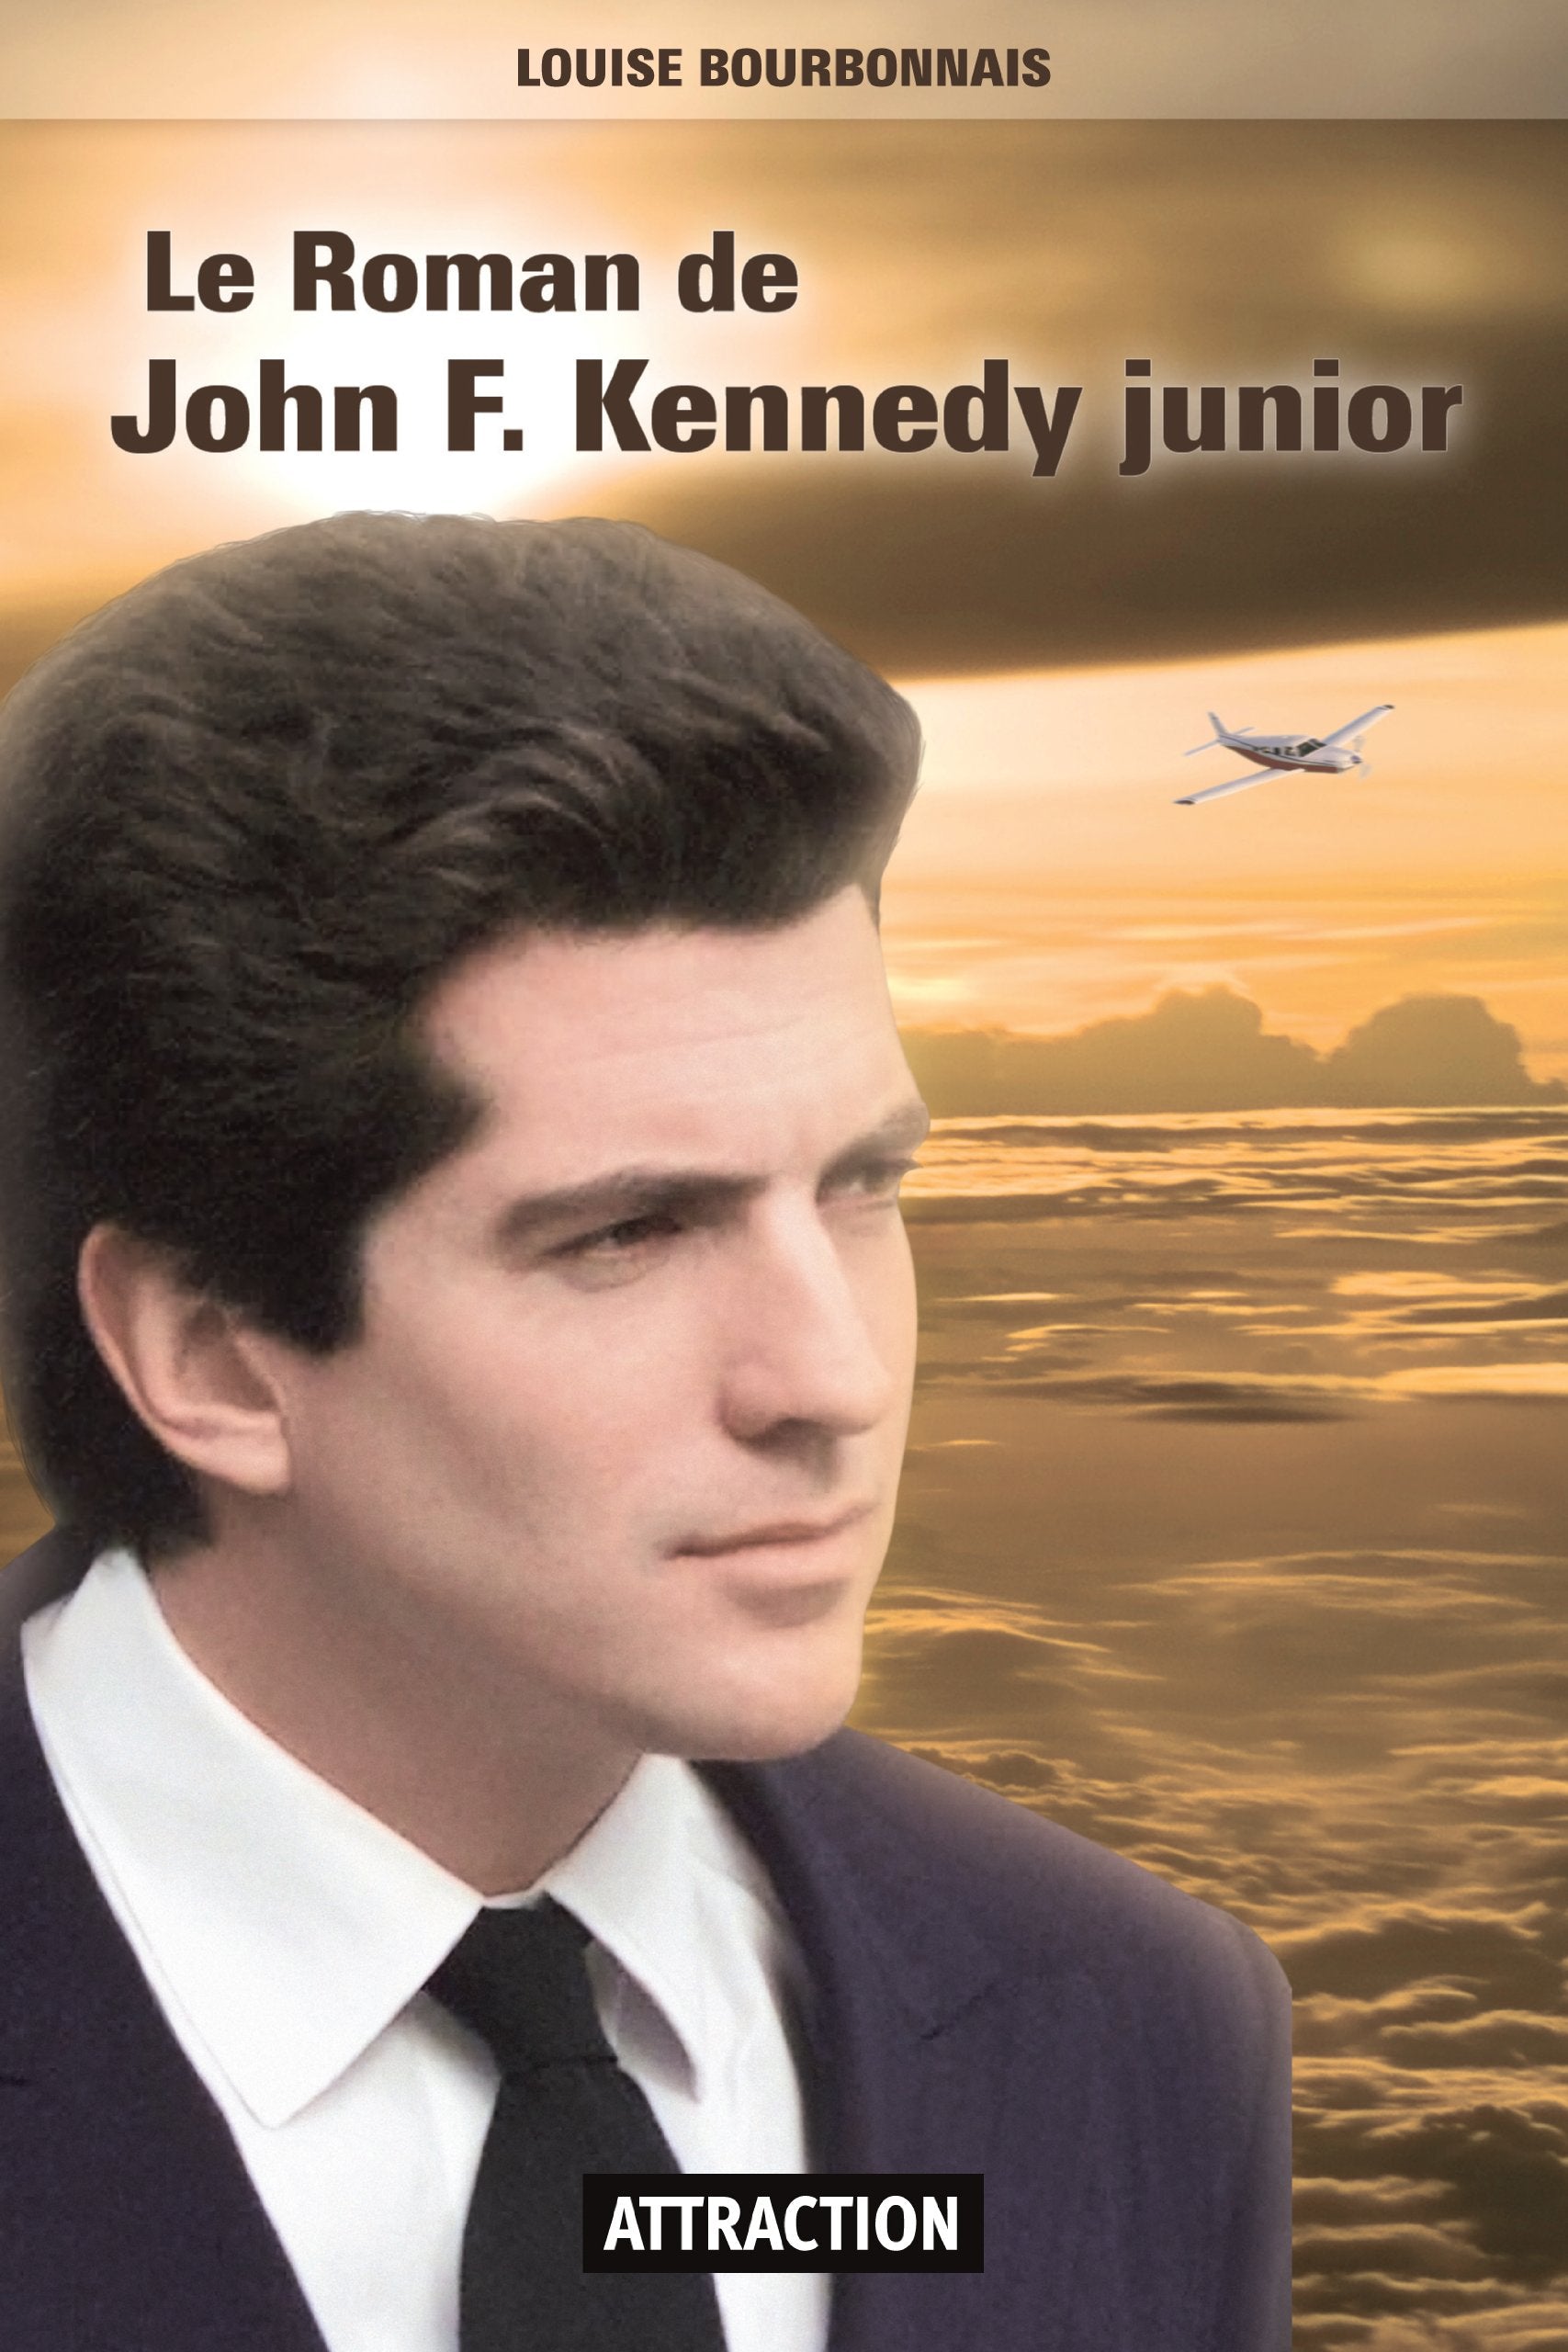 Le Roman de John F. Kennedy junior - Louise Bourbonnais